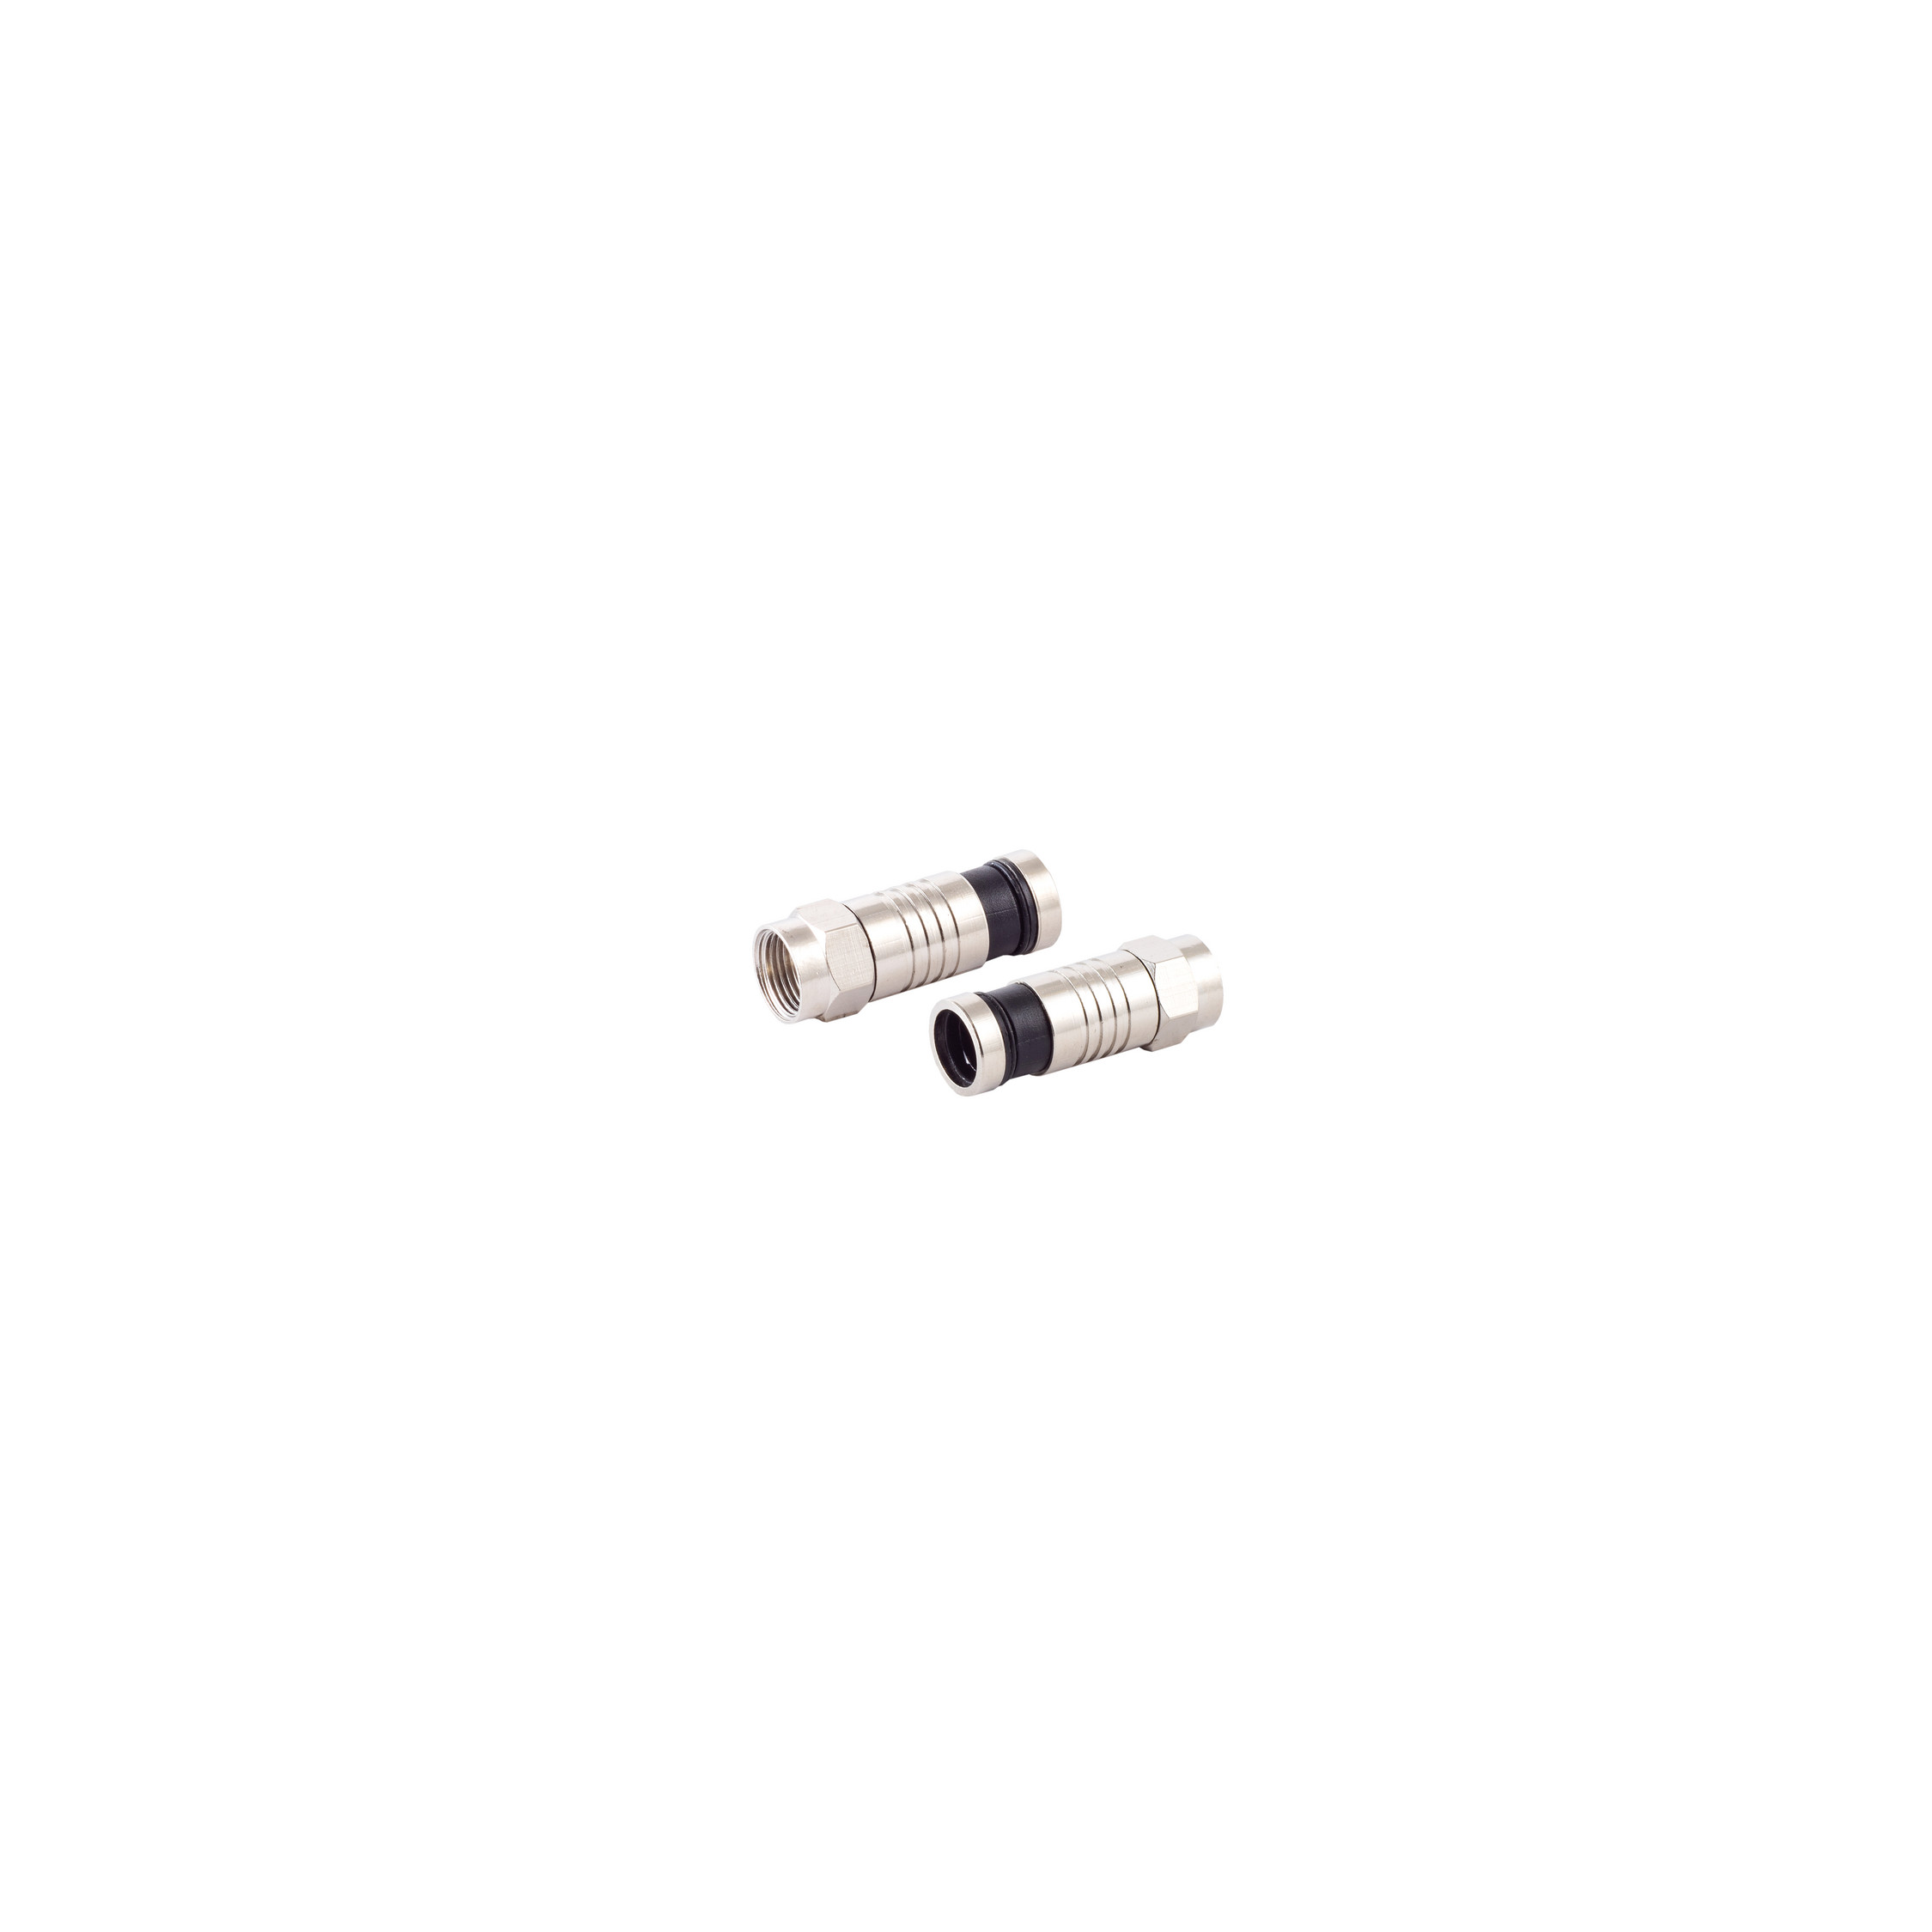 S/CONN MAXIMUM F-Kompressionsstecker SAT Kabel für Stecker Adapter & 7,2mm CONNECTIVITY